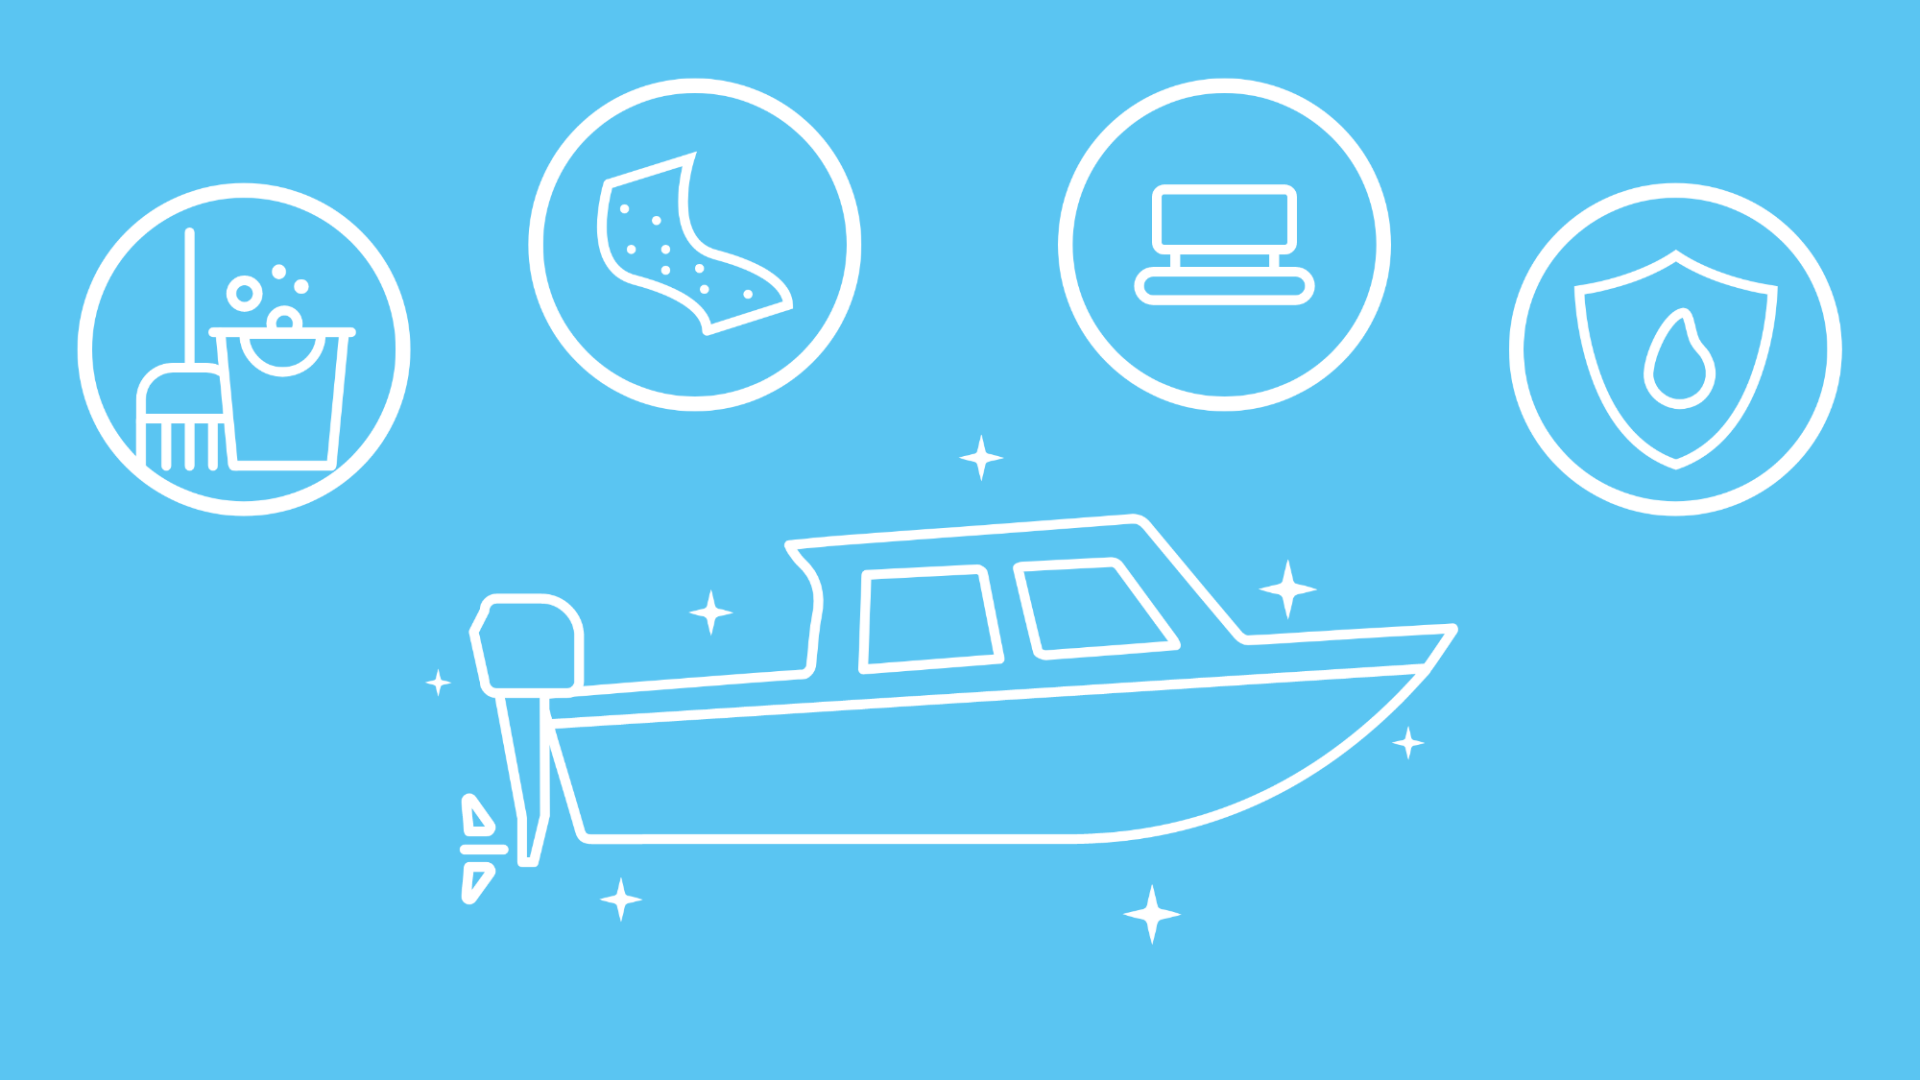 Im Fokus der Grafik steht ein frisch poliertes Boot. Um das Boot herum sind im Icon-Stil die Schritte Reinigung, Schleifen, Polieren und Versiegelung dargestellt. 